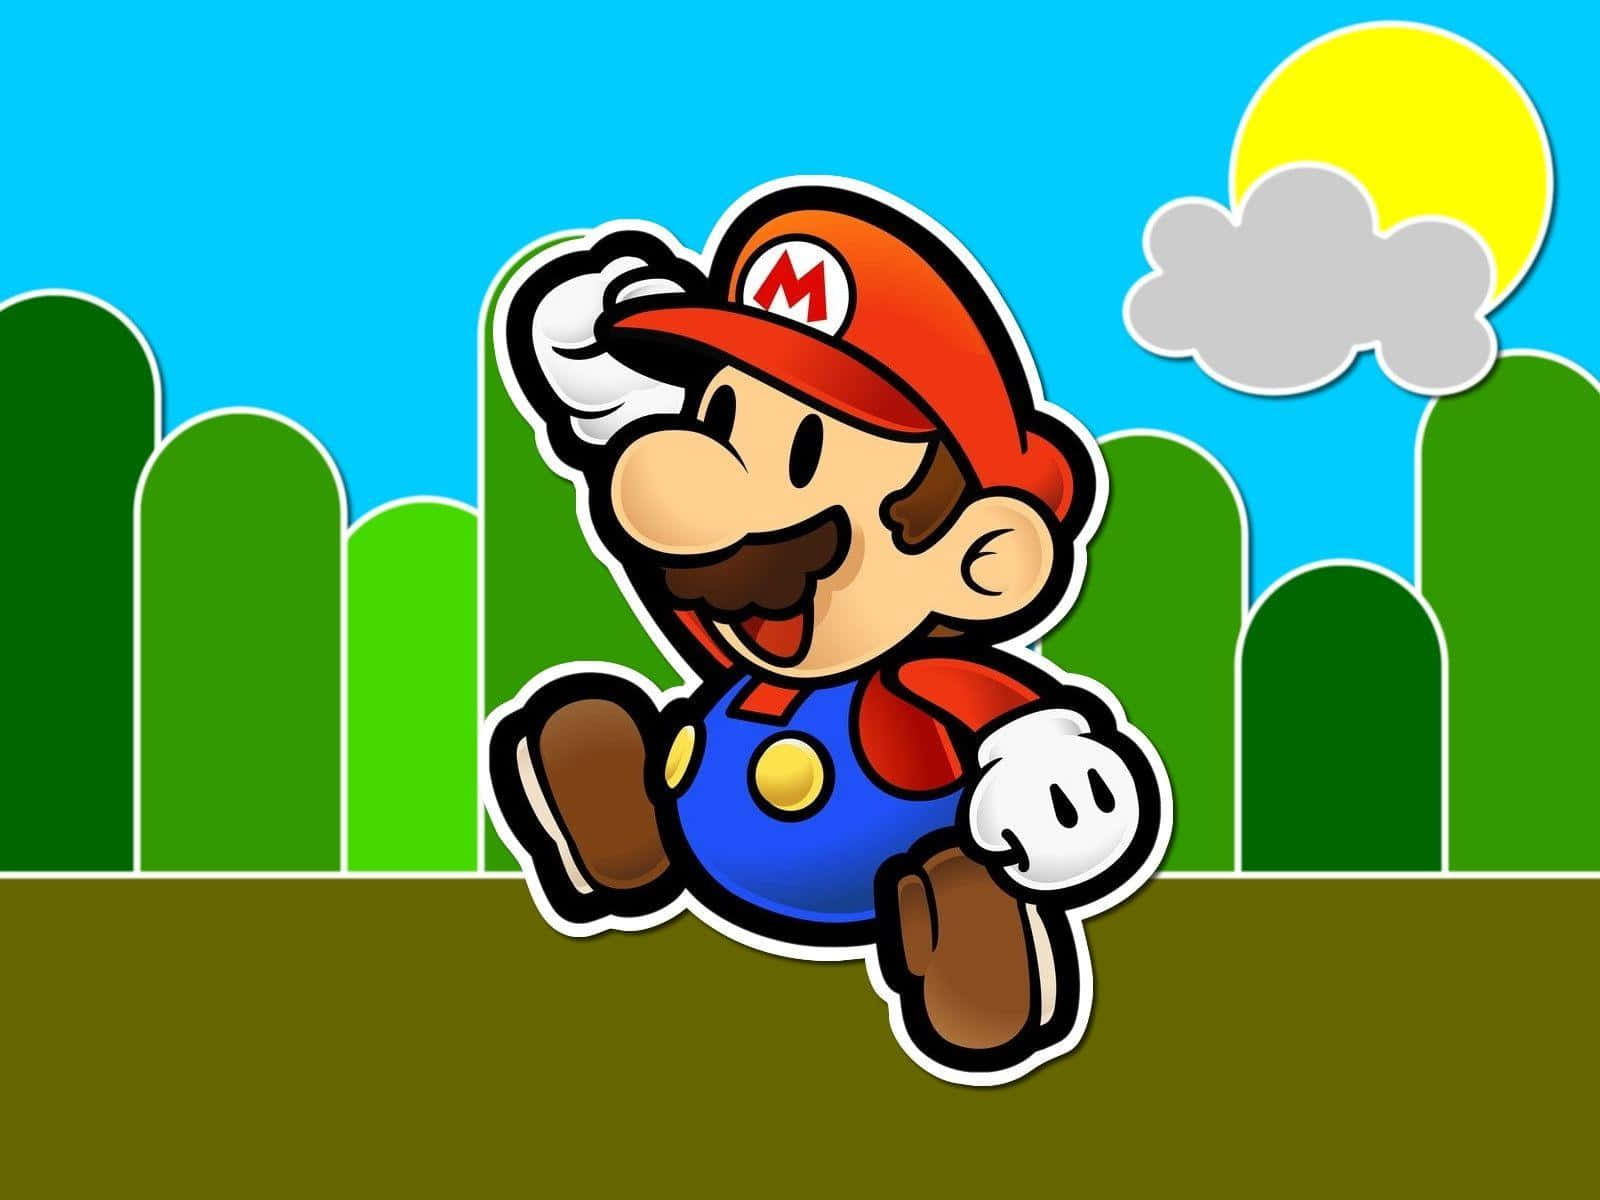 Genießeden Klassischen Look Eines Der Einflussreichsten Charaktere In Der Geschichte Der Videospielbranche, Super Mario.